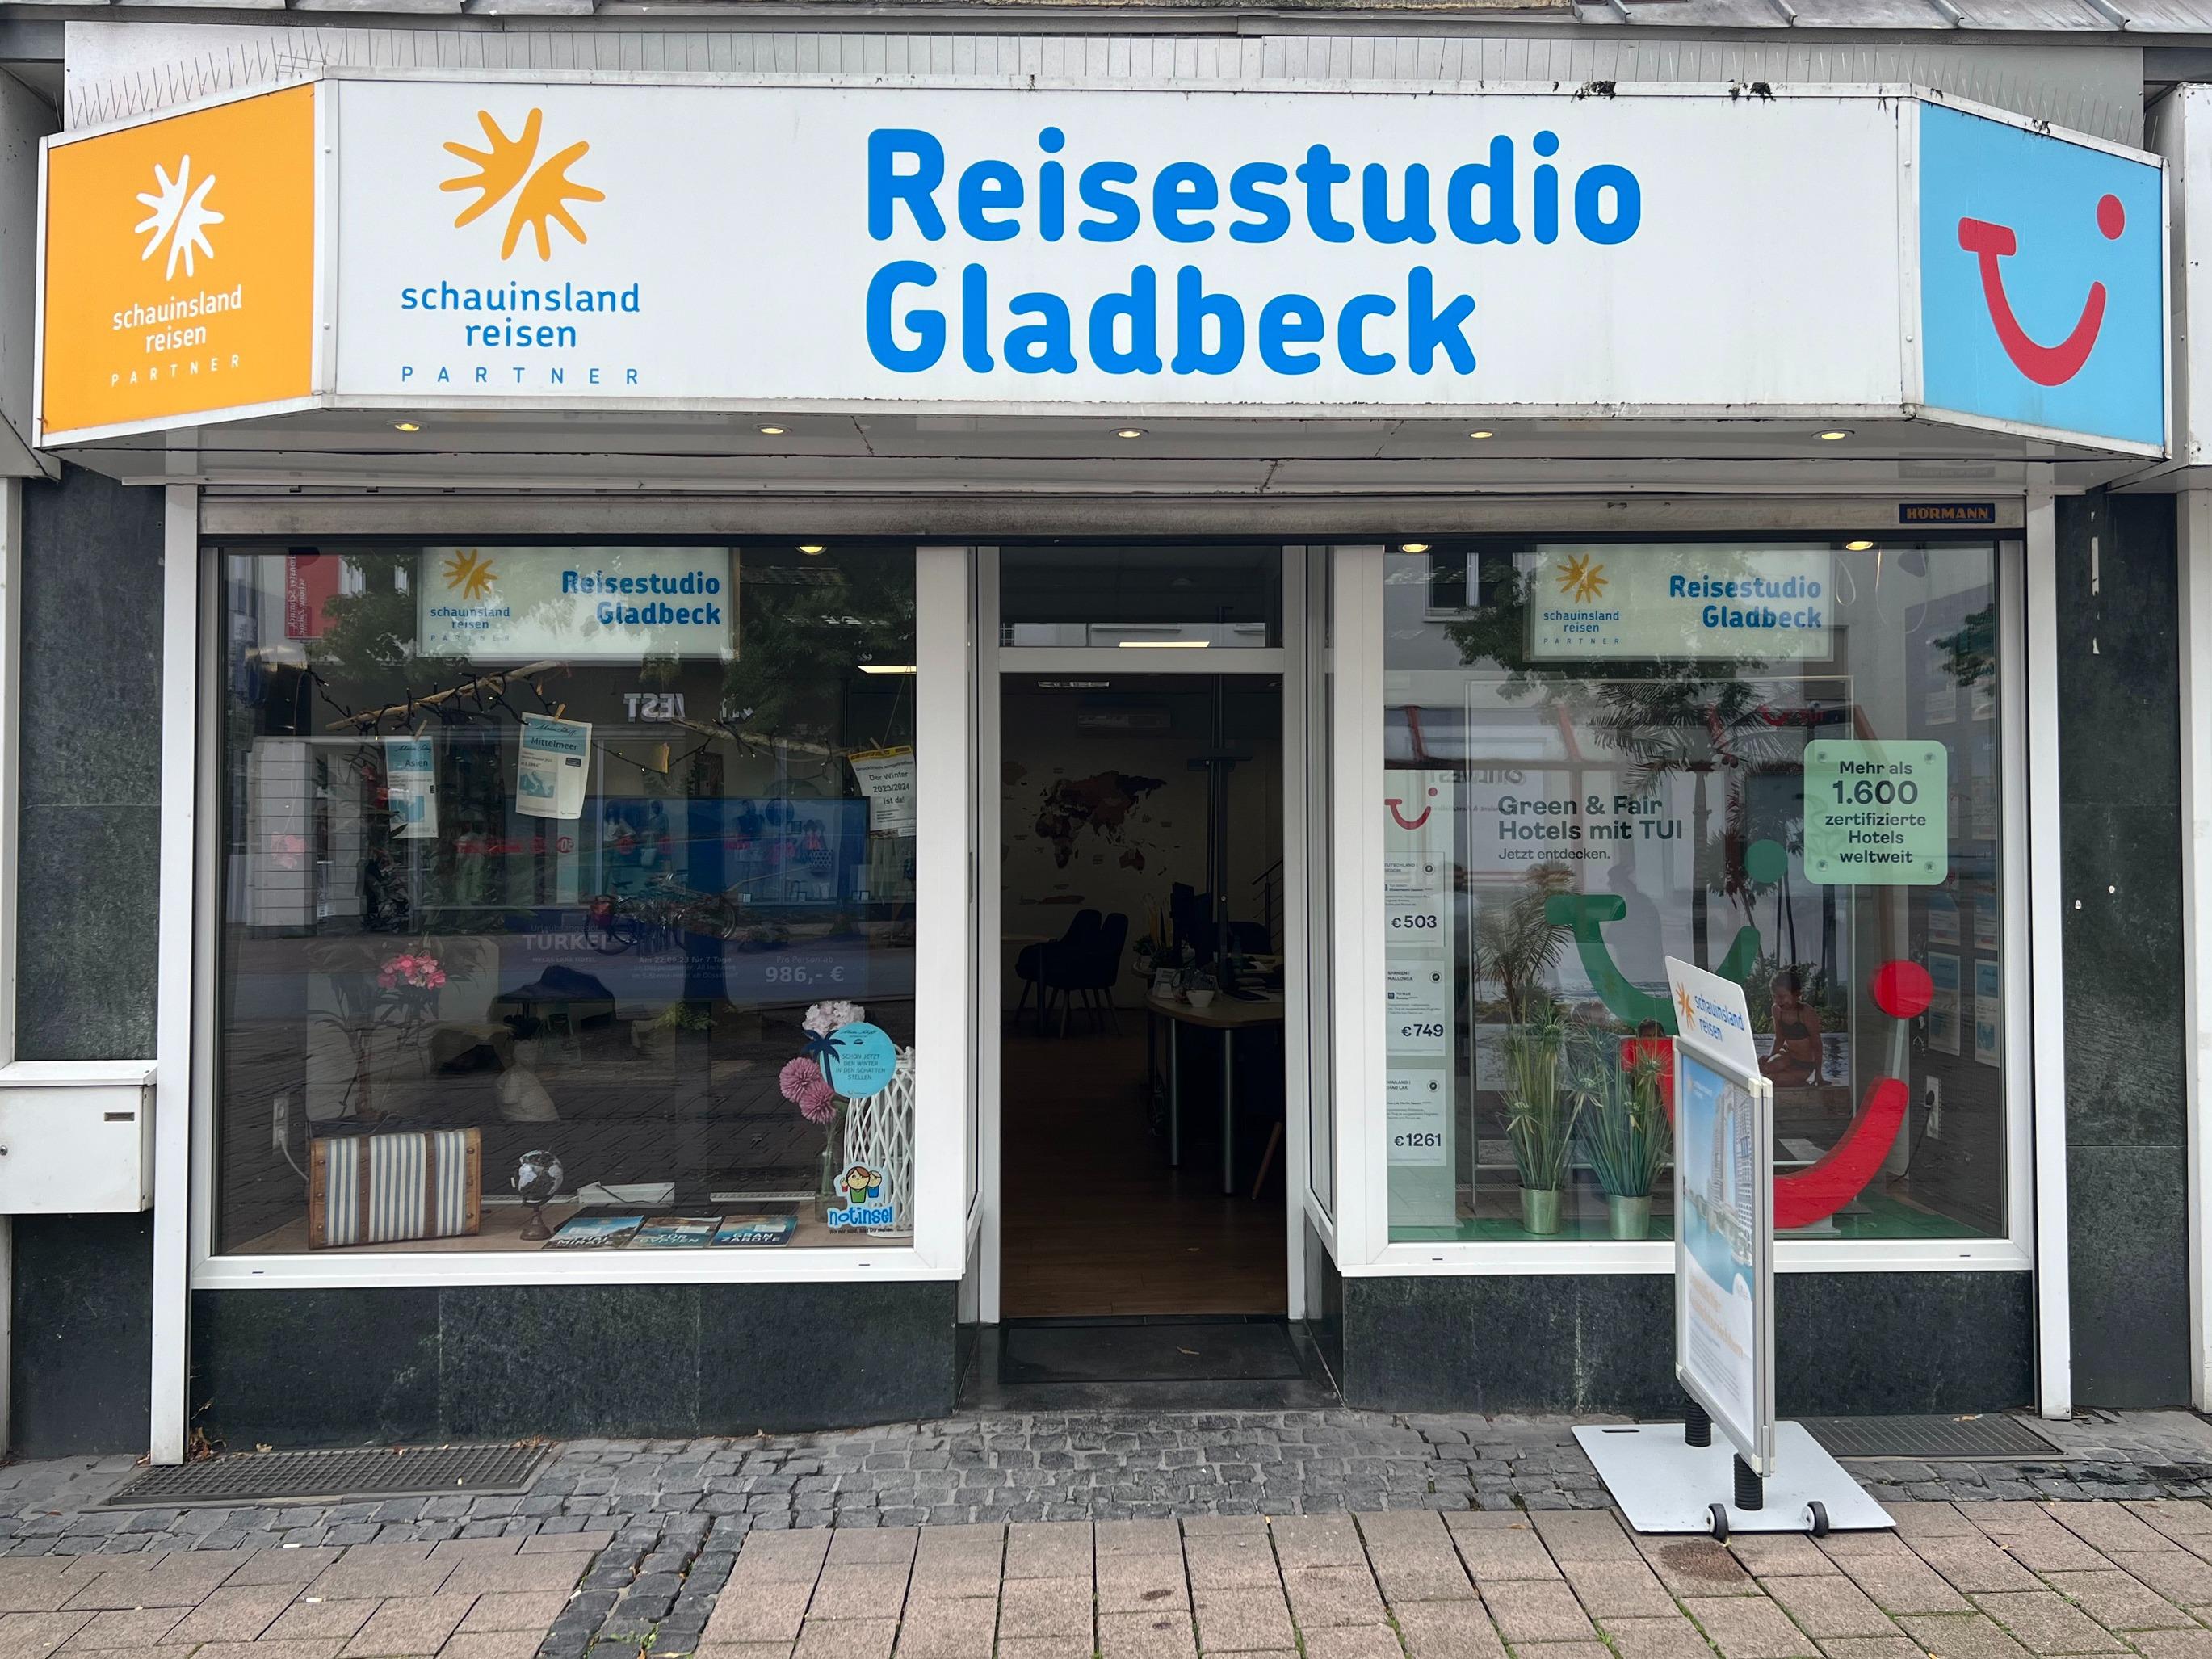 Reisestudio Gladbeck, Willy-Brandt-Platz 9 in Gladbeck